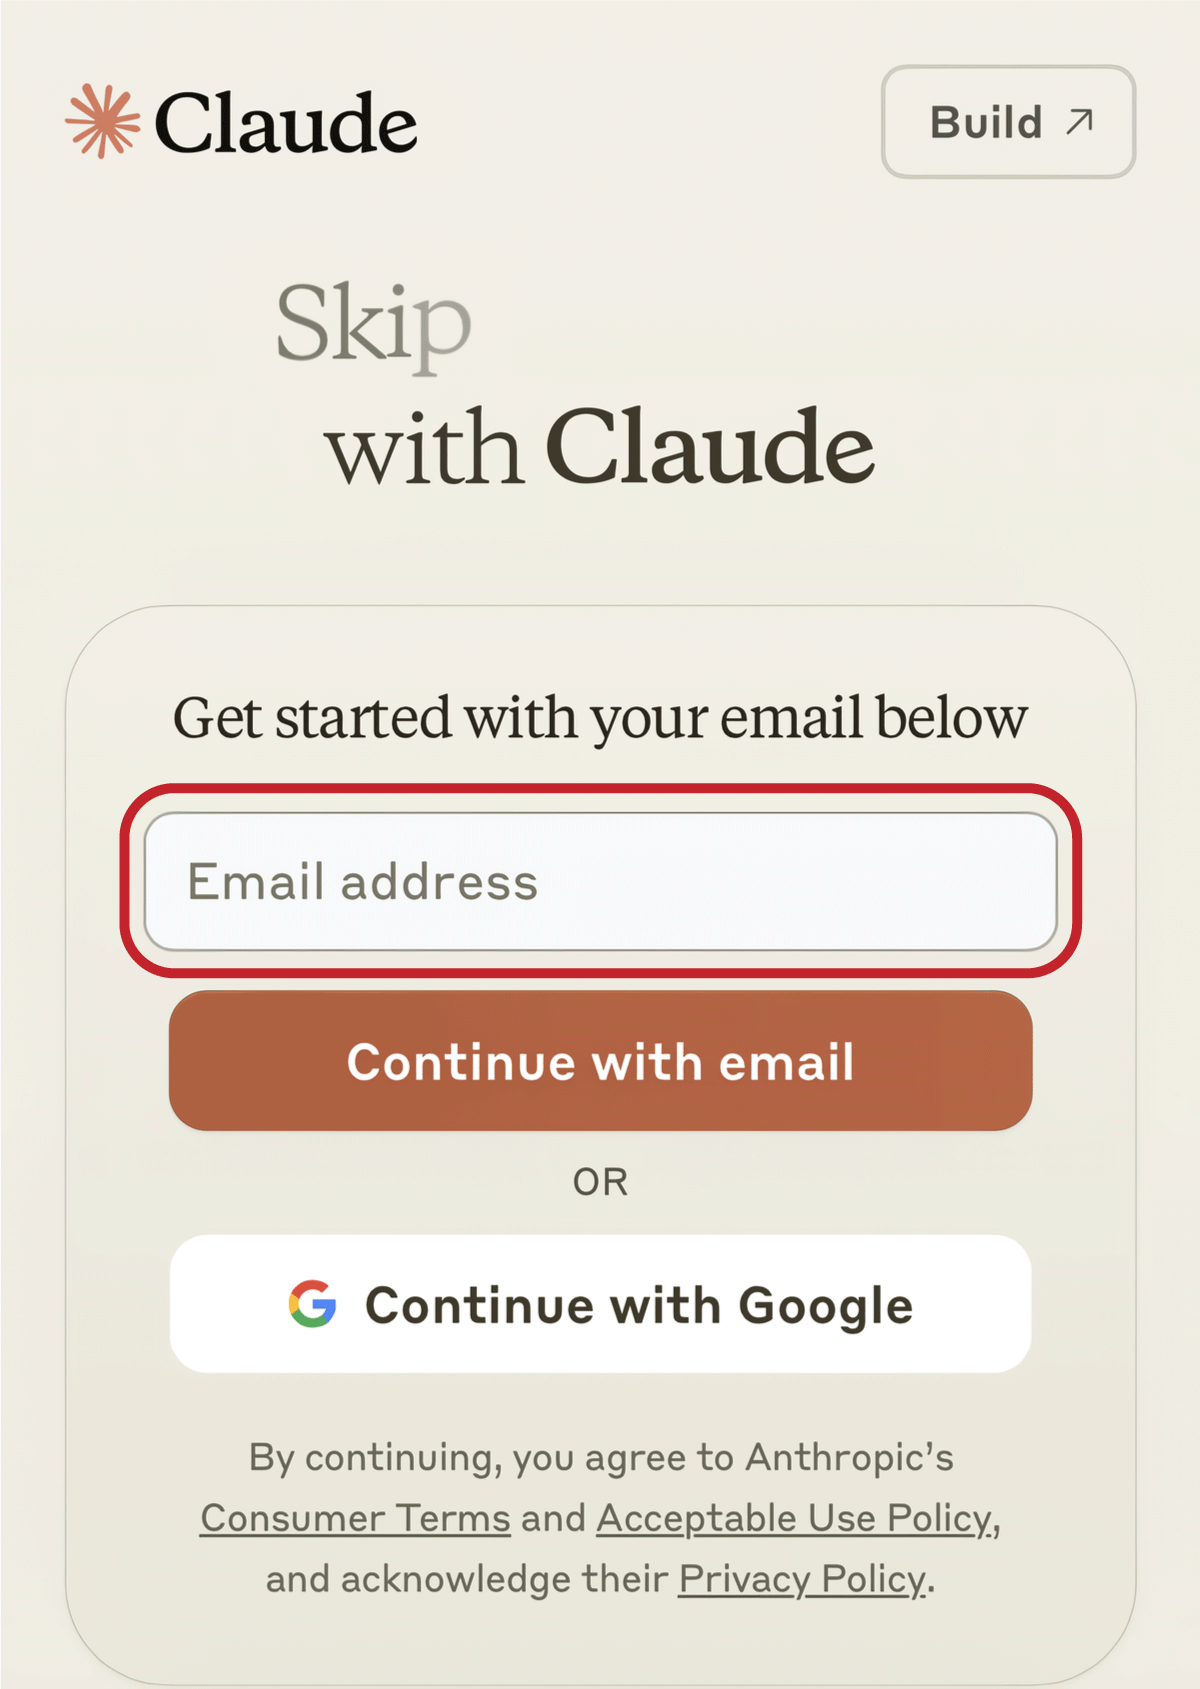 E-mailアドレスを入力し「Continue with email」をタップする場面のスクリーンショット